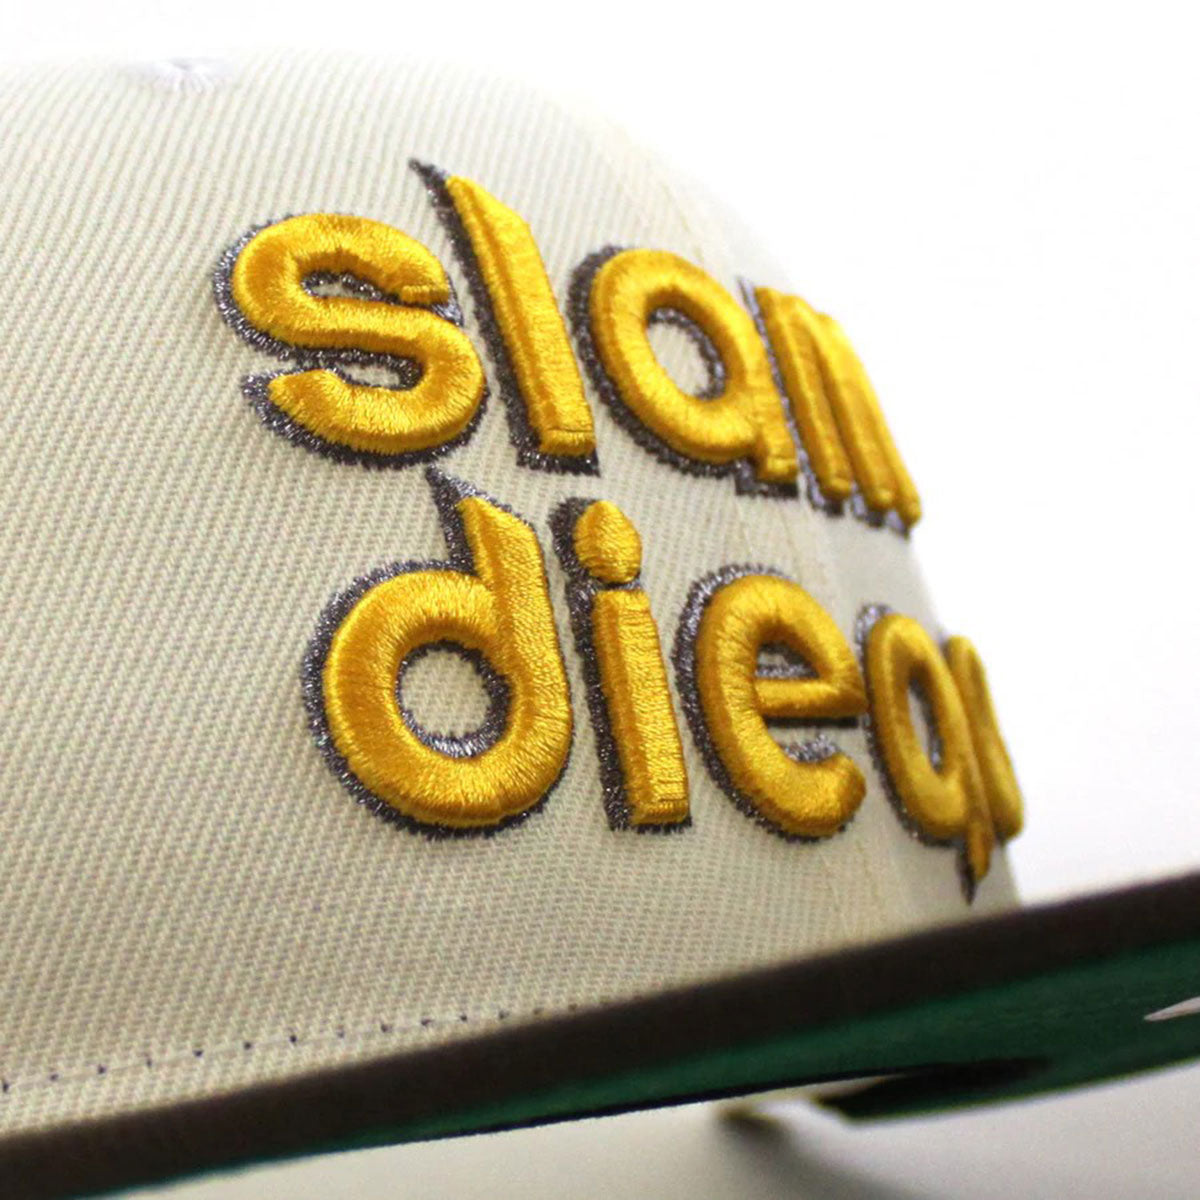 NEW ERA 聖地牙哥教士隊 - 59FIFTY (Slam Diego) Petco Park Chrome